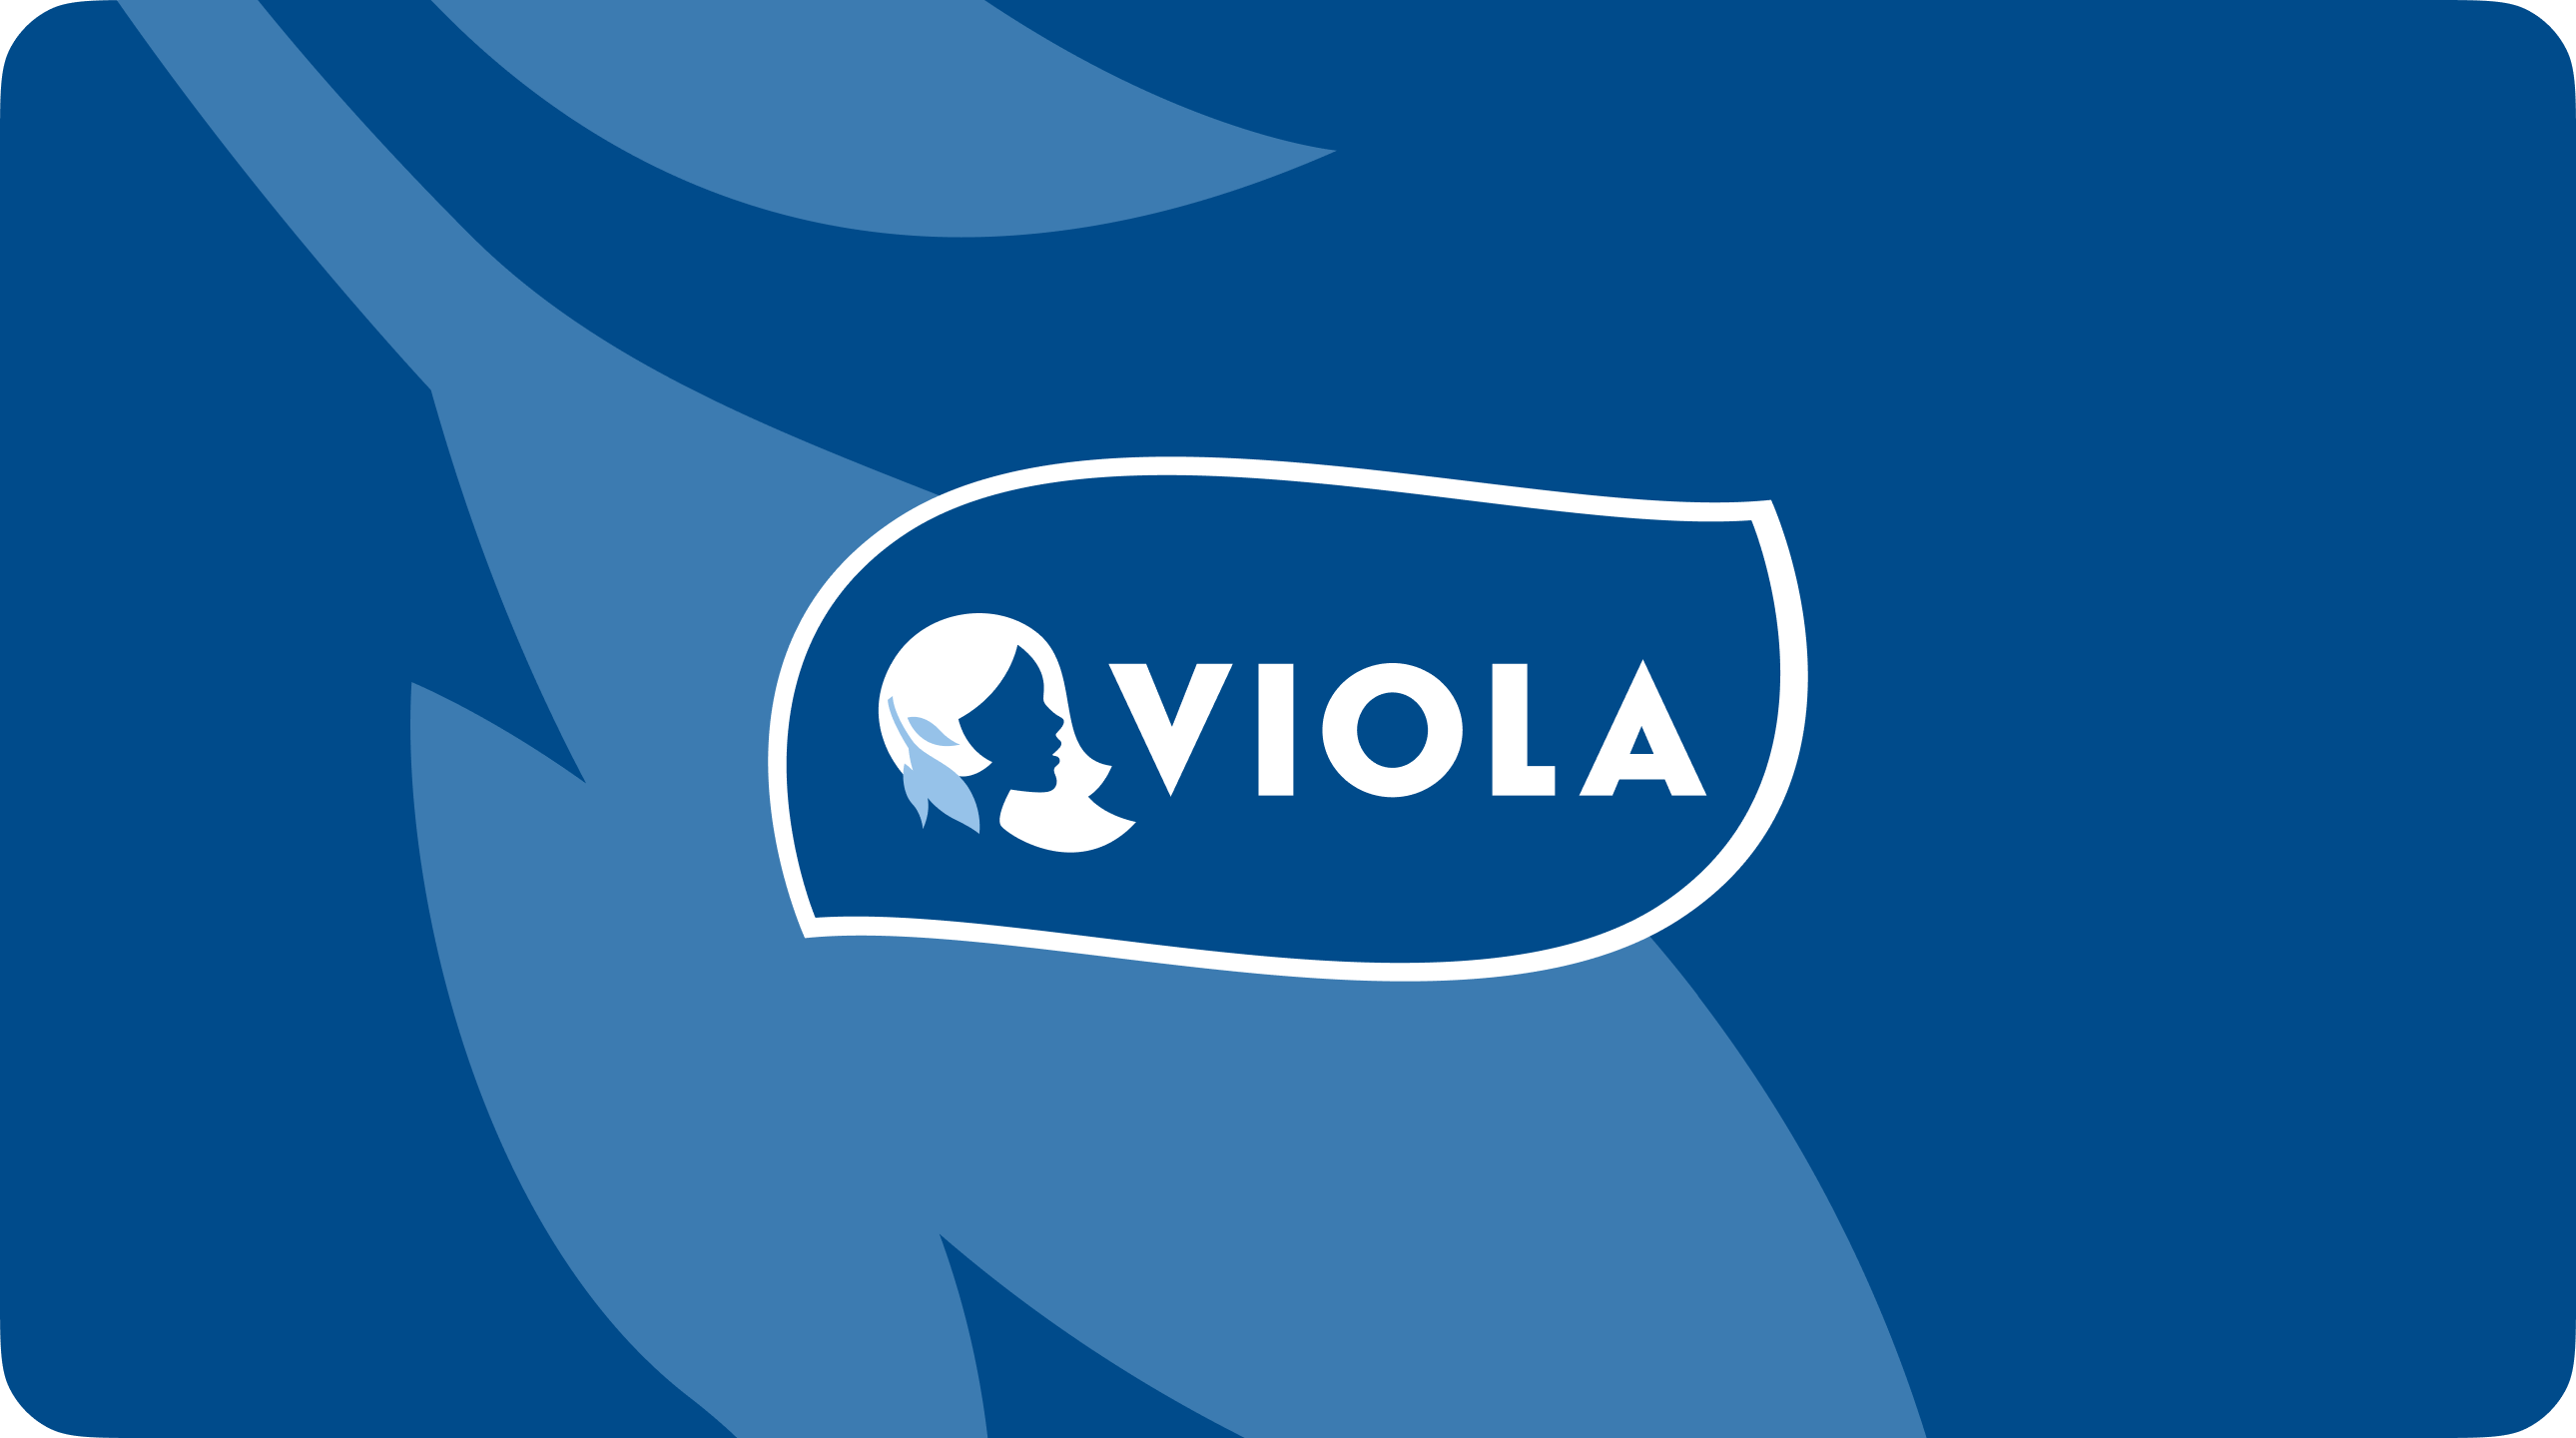 Сайт для одного из крупнейших проивзодителей молочной продукции в России «Viola»